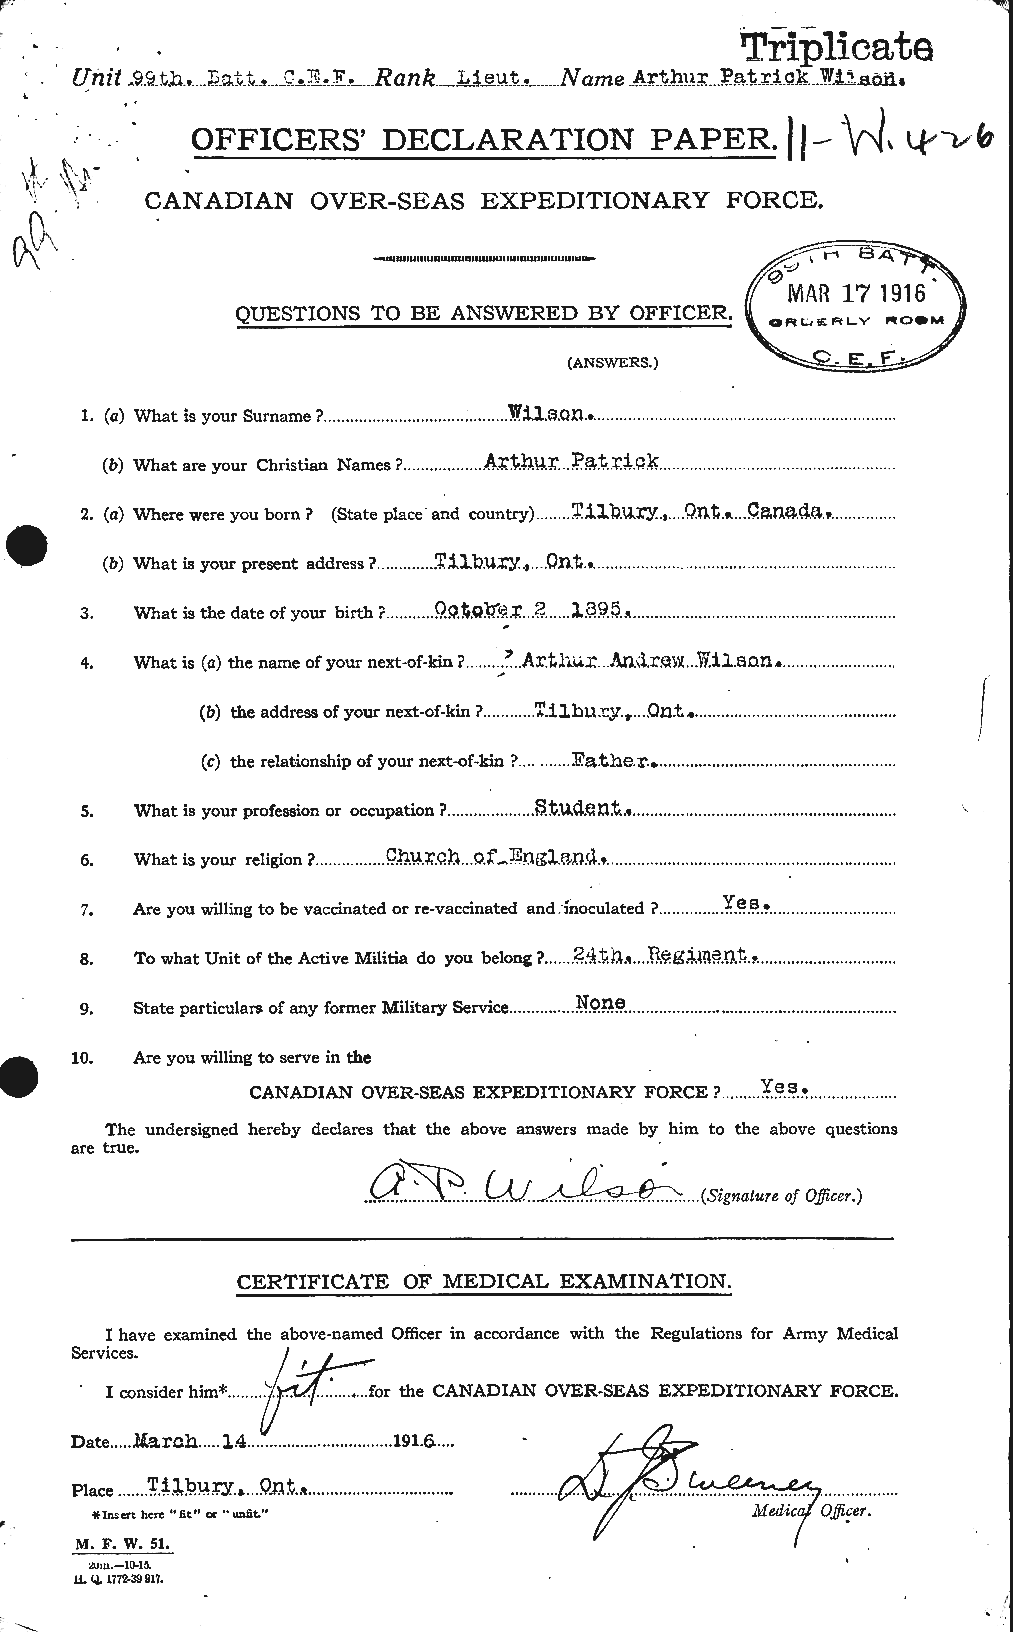 Dossiers du Personnel de la Première Guerre mondiale - CEC 677780a